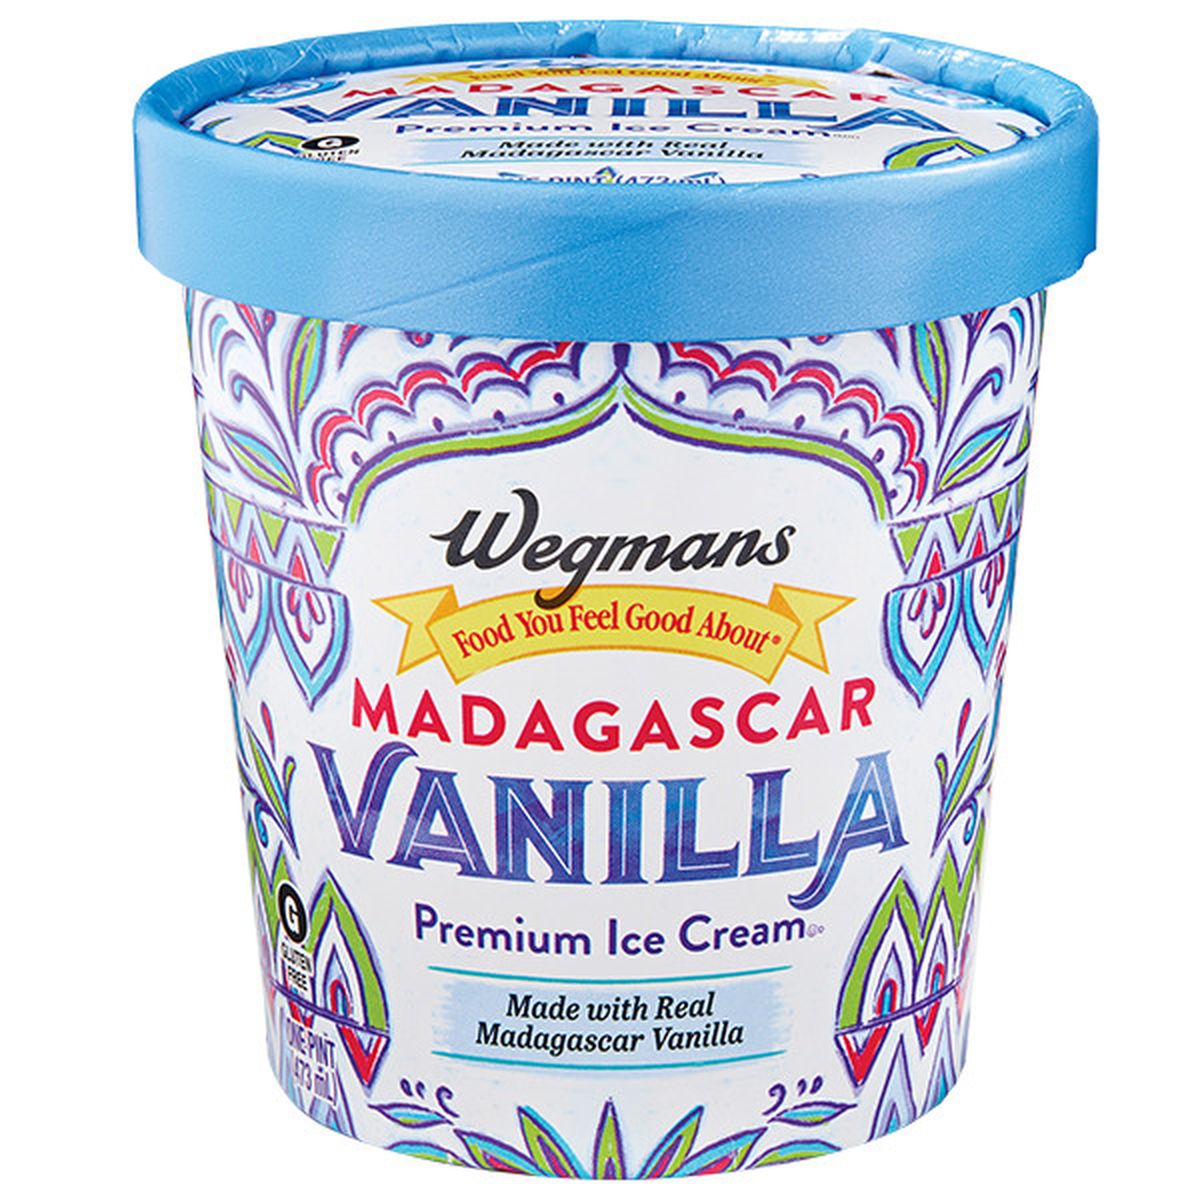 Calories in Wegmans Madagascar Vanilla Premium Ice Cream